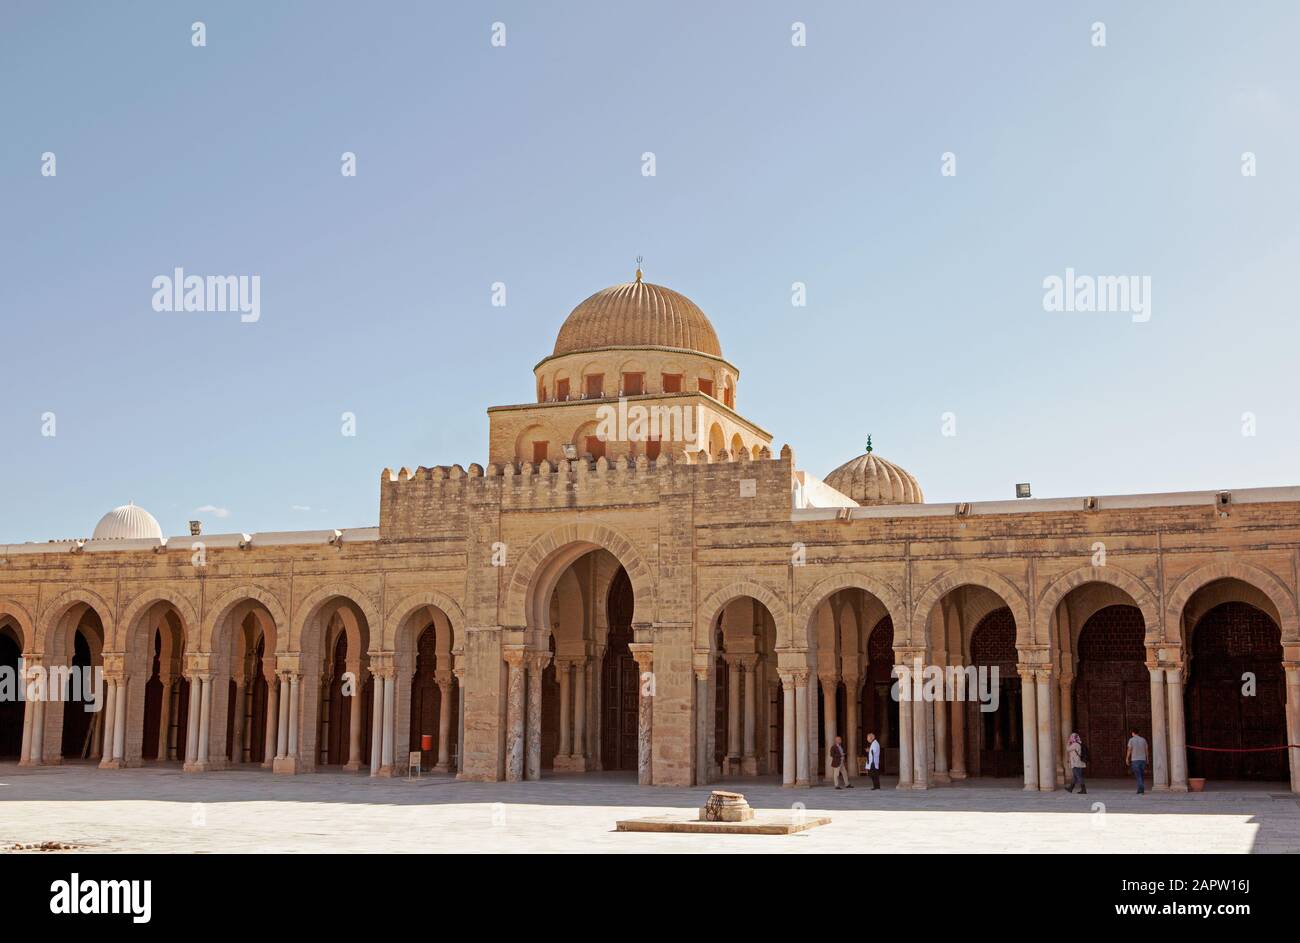 Grande mosquée de Kairouan, Tunisie Banque D'Images